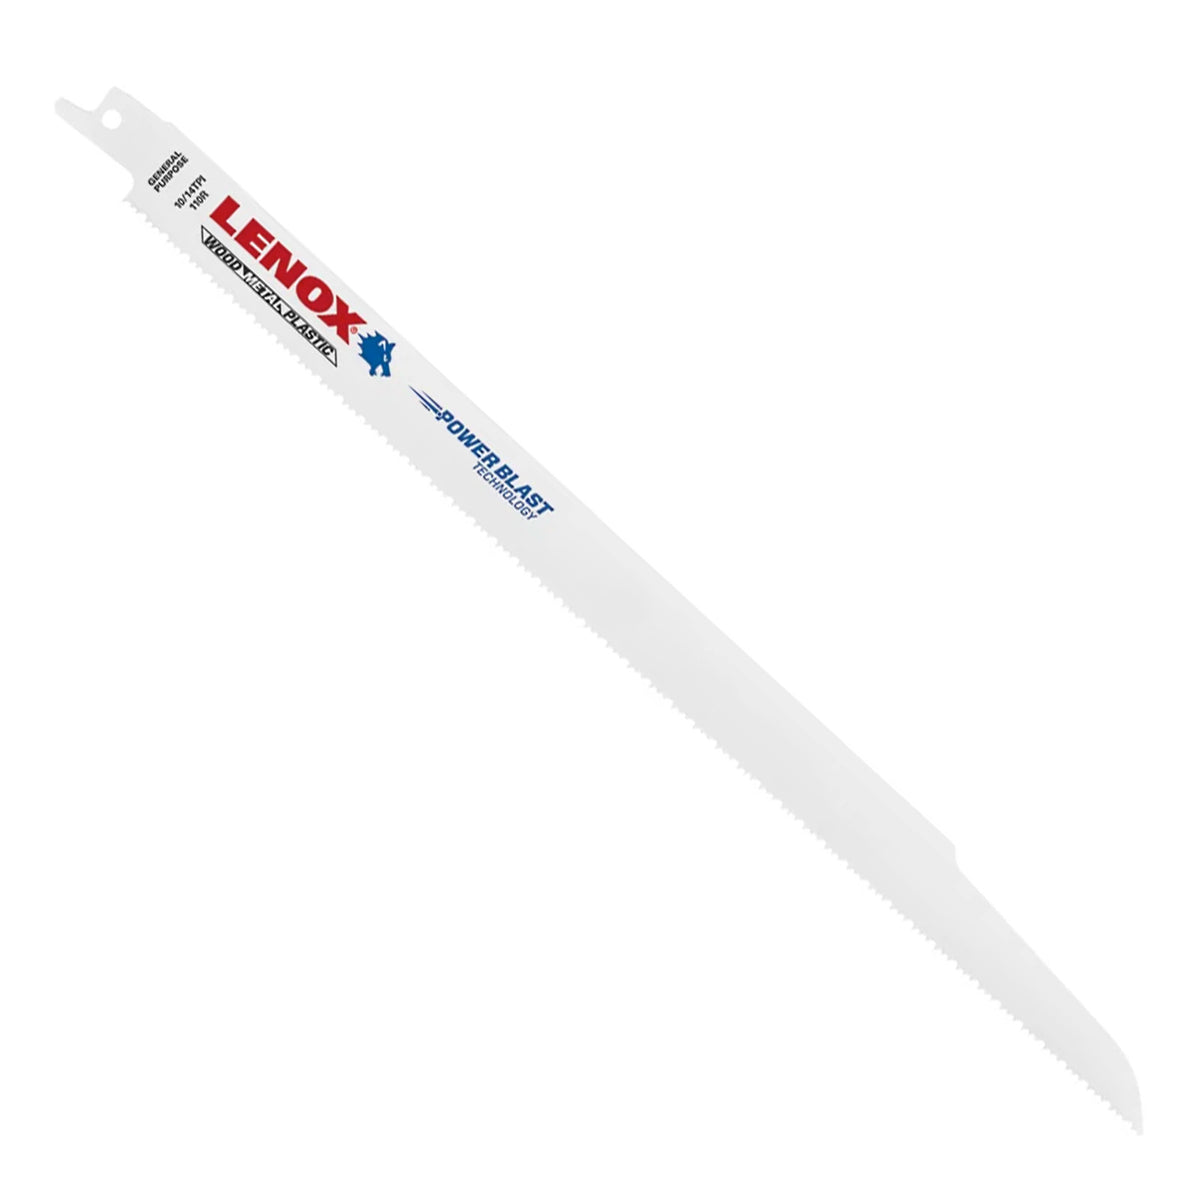 Lenox General Purpose Bi-Metal Reciprocating Saw Blade - 110R - 12", 10/14 TPI